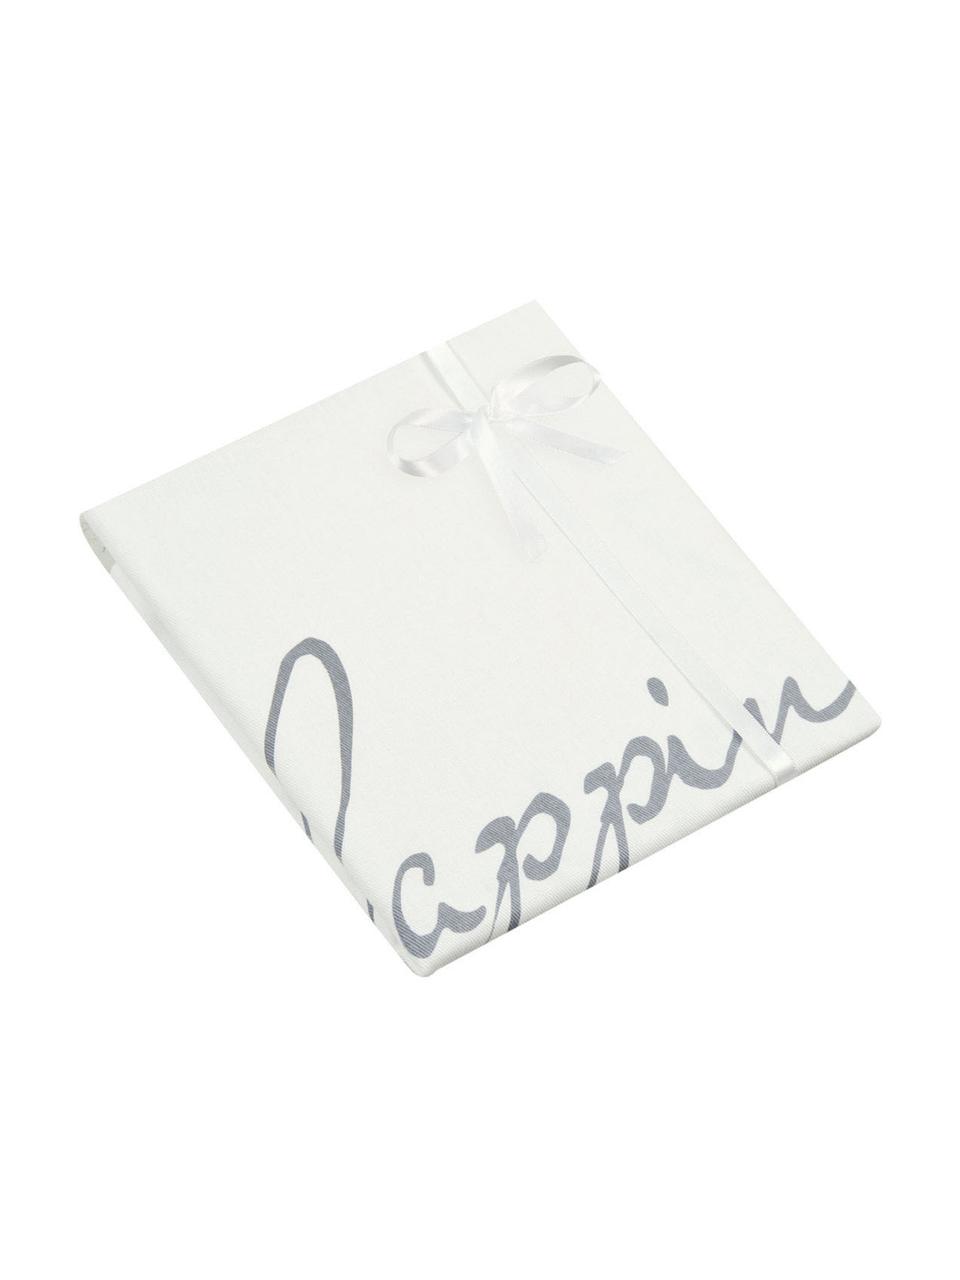 Federa arredo con scritta Happiness, 100% cotone, tessuto panama, Grigio, crema, Larg. 40 x Lung. 40 cm